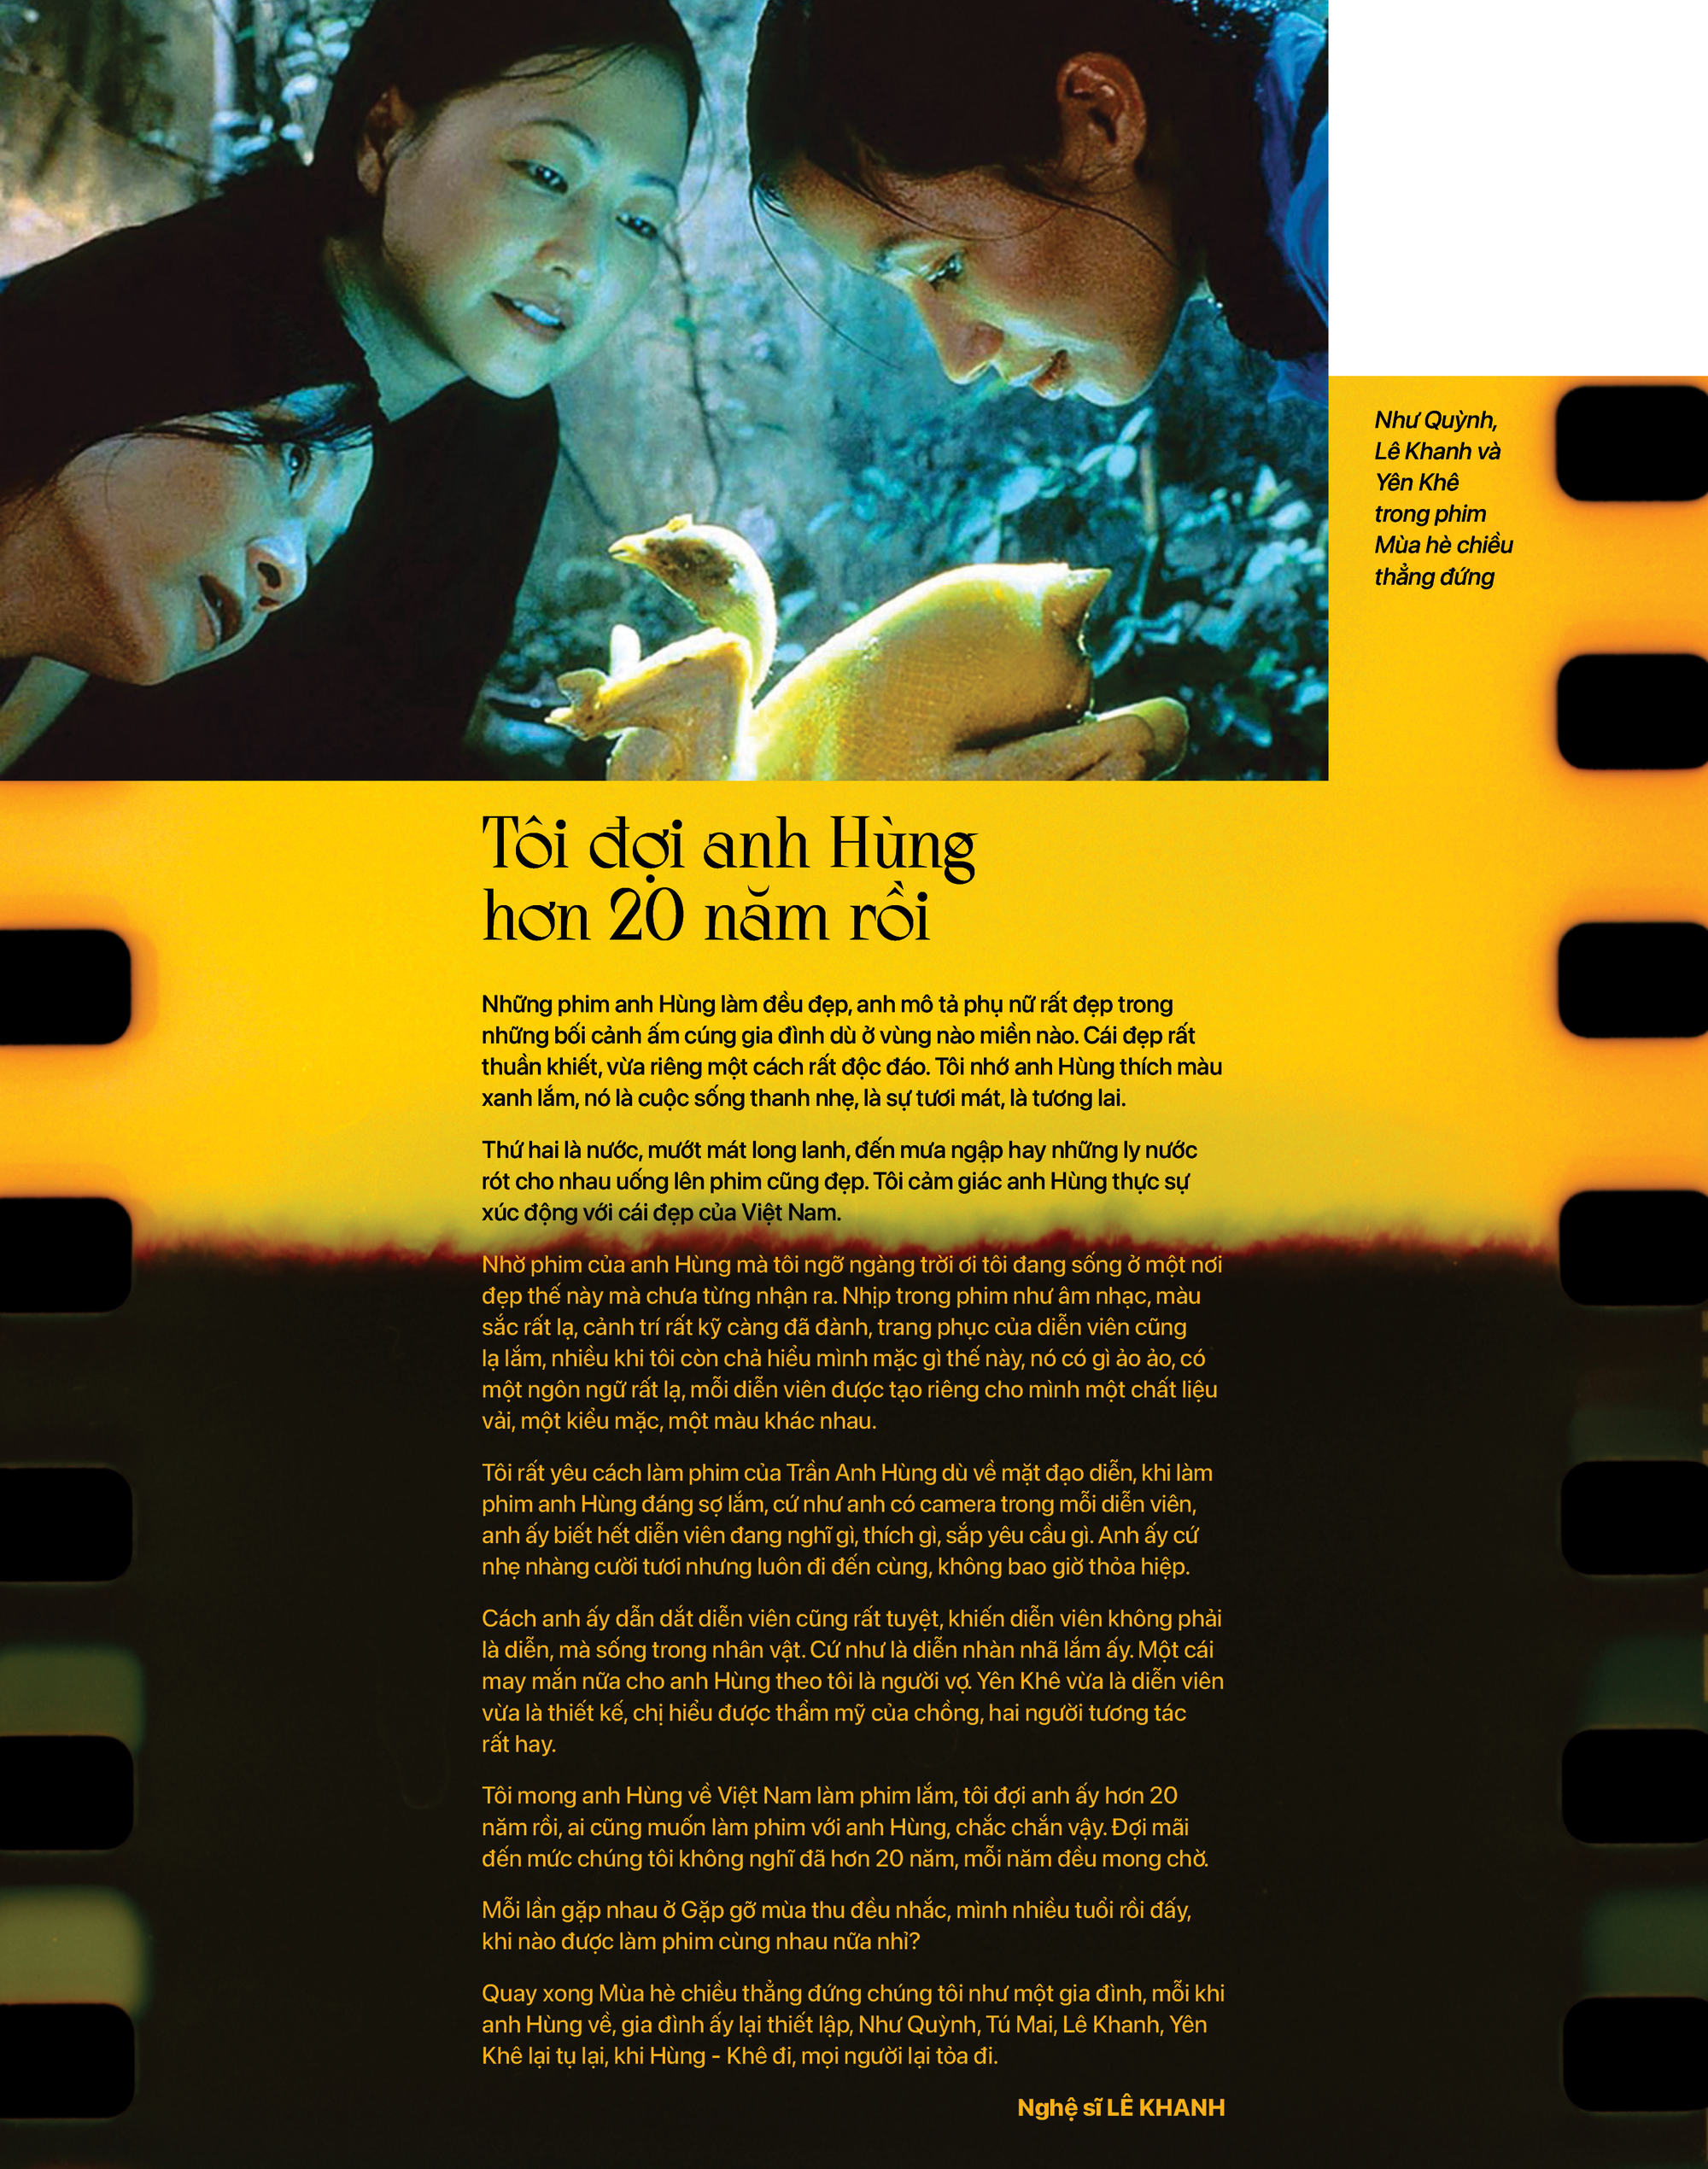 Đạo diễn Trần Anh Hùng: Tôi luôn muốn làm phim nói tiếng Việt Nam - Ảnh 7.